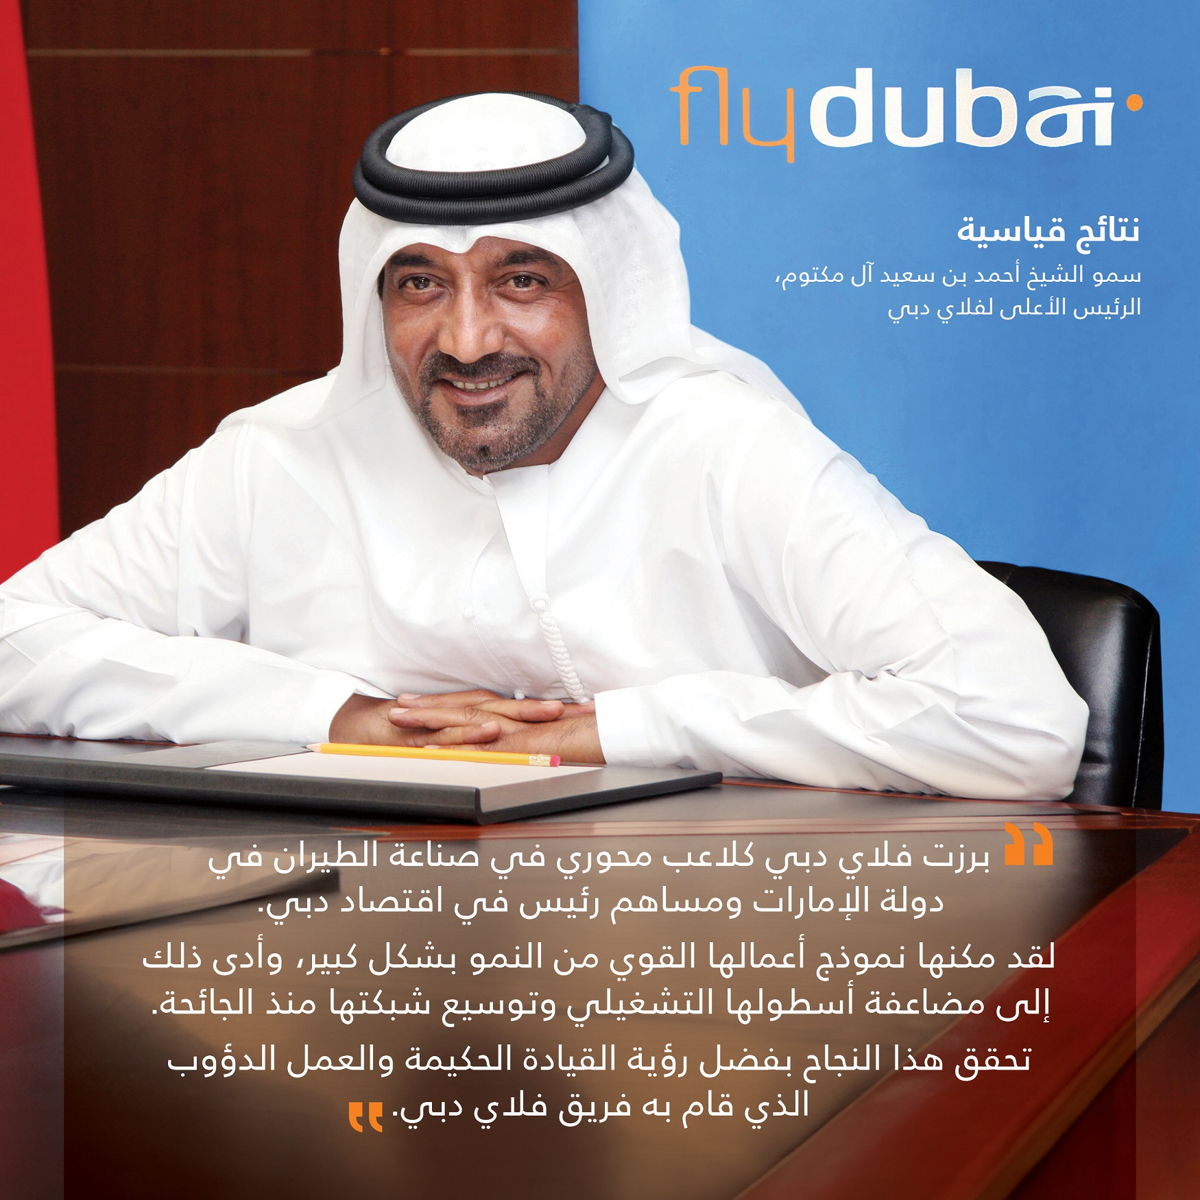 سمو الشيخ أحمد بن سعيد آل مكتوم، الرئيس الأعلى لفلاي دبي